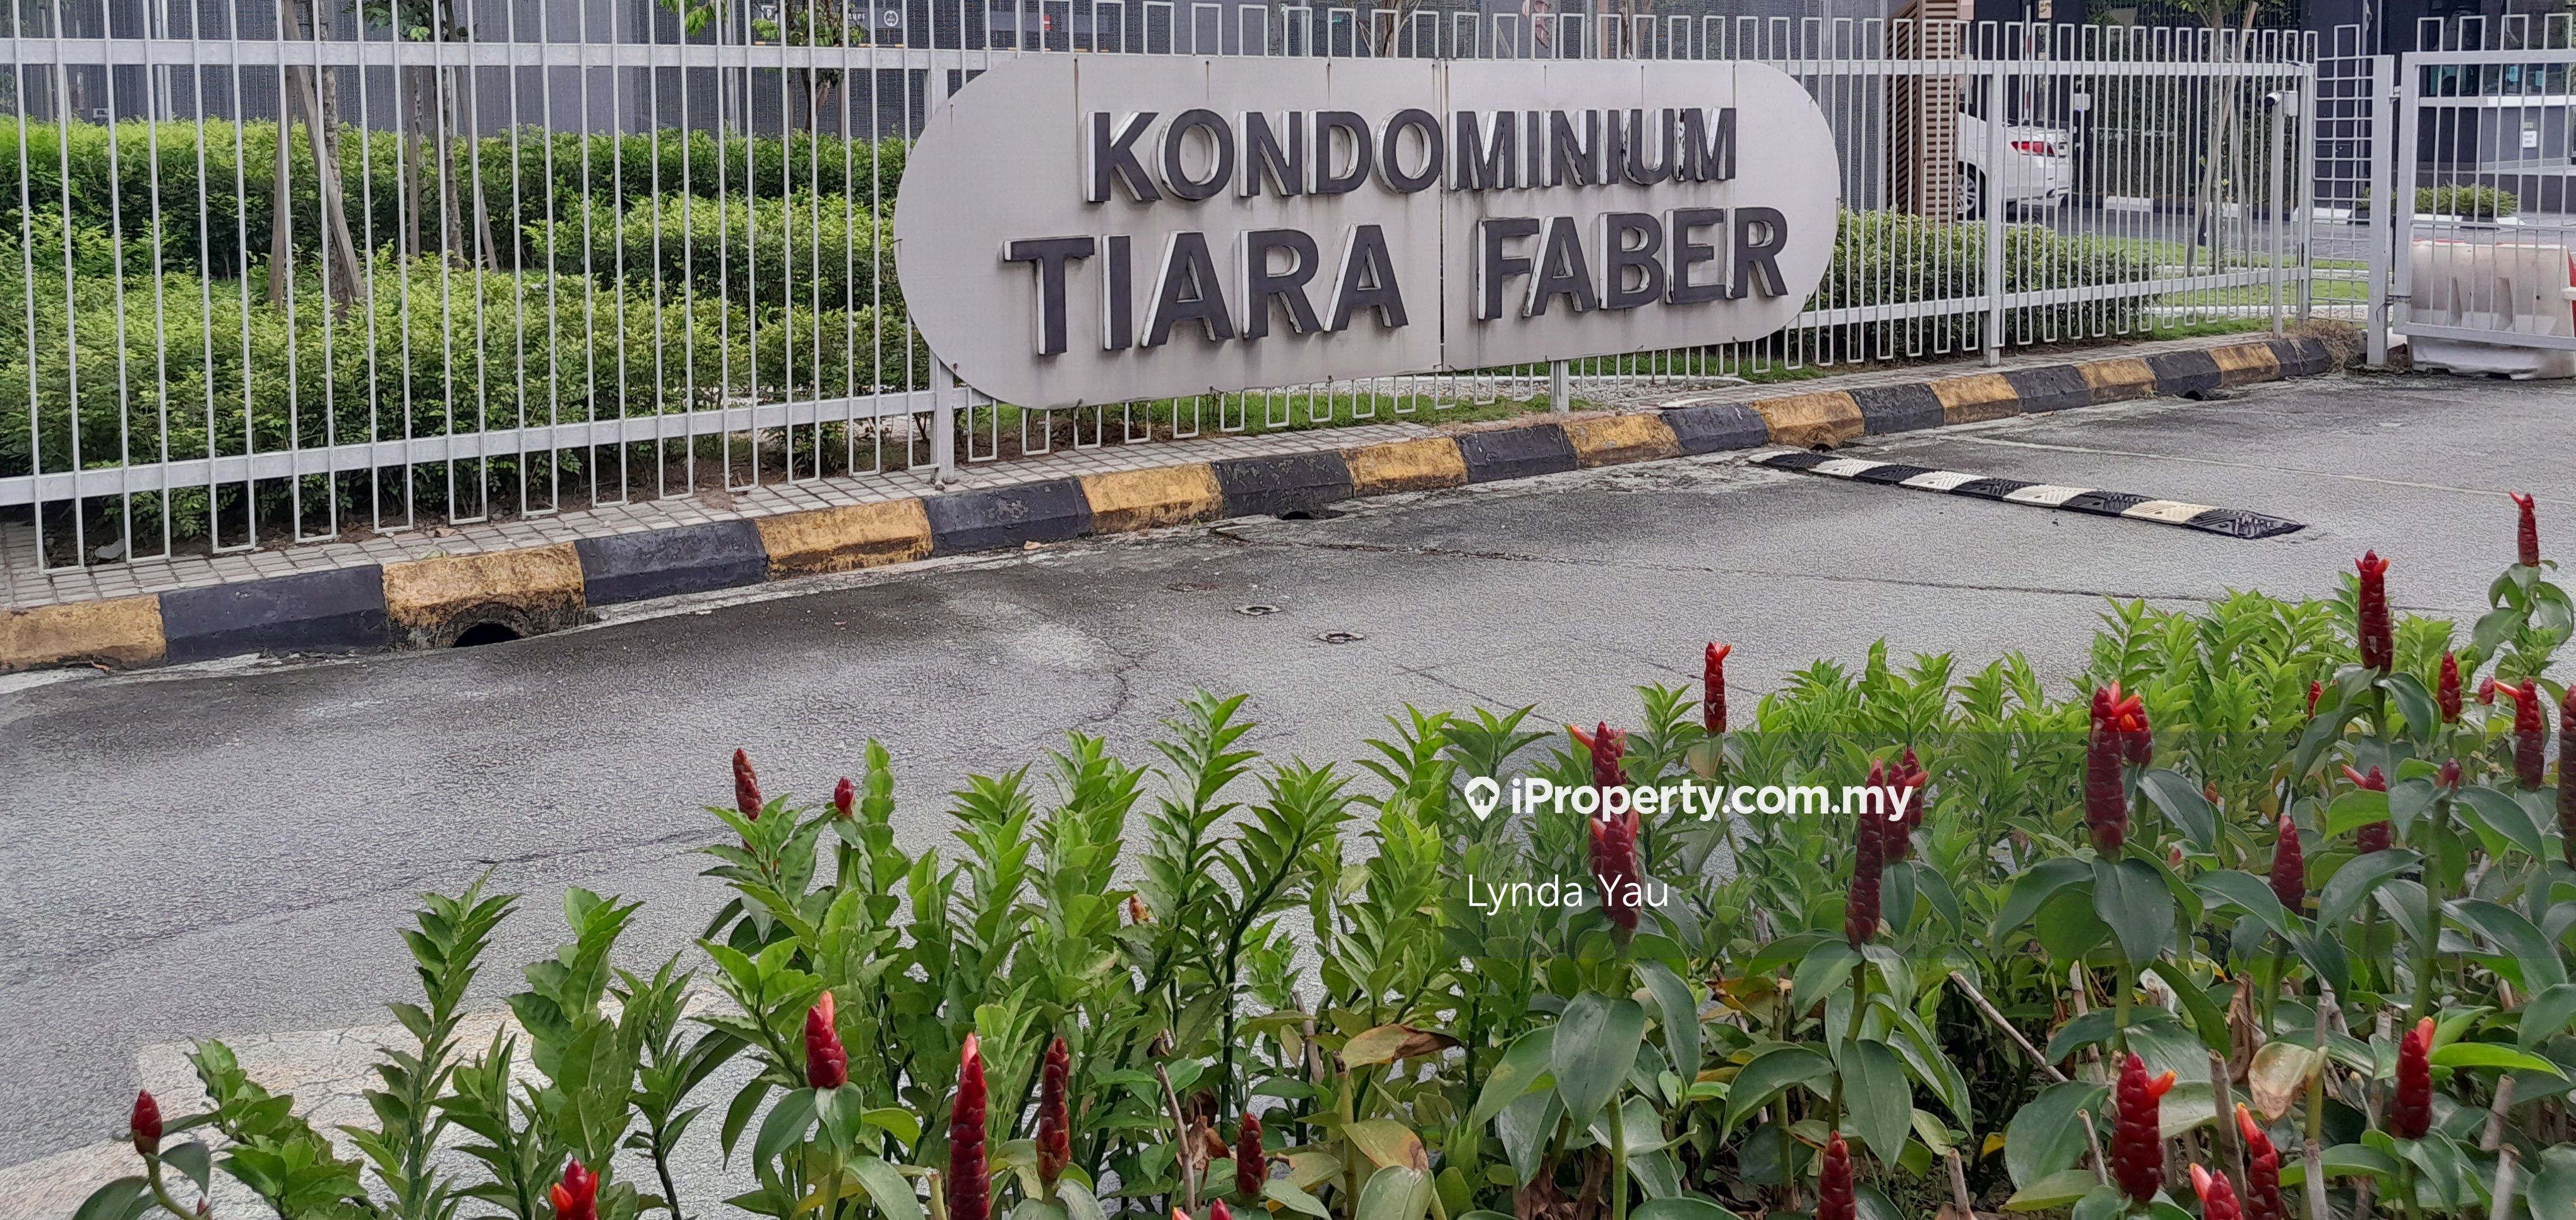 Tiara Faber Condominiium For Sale